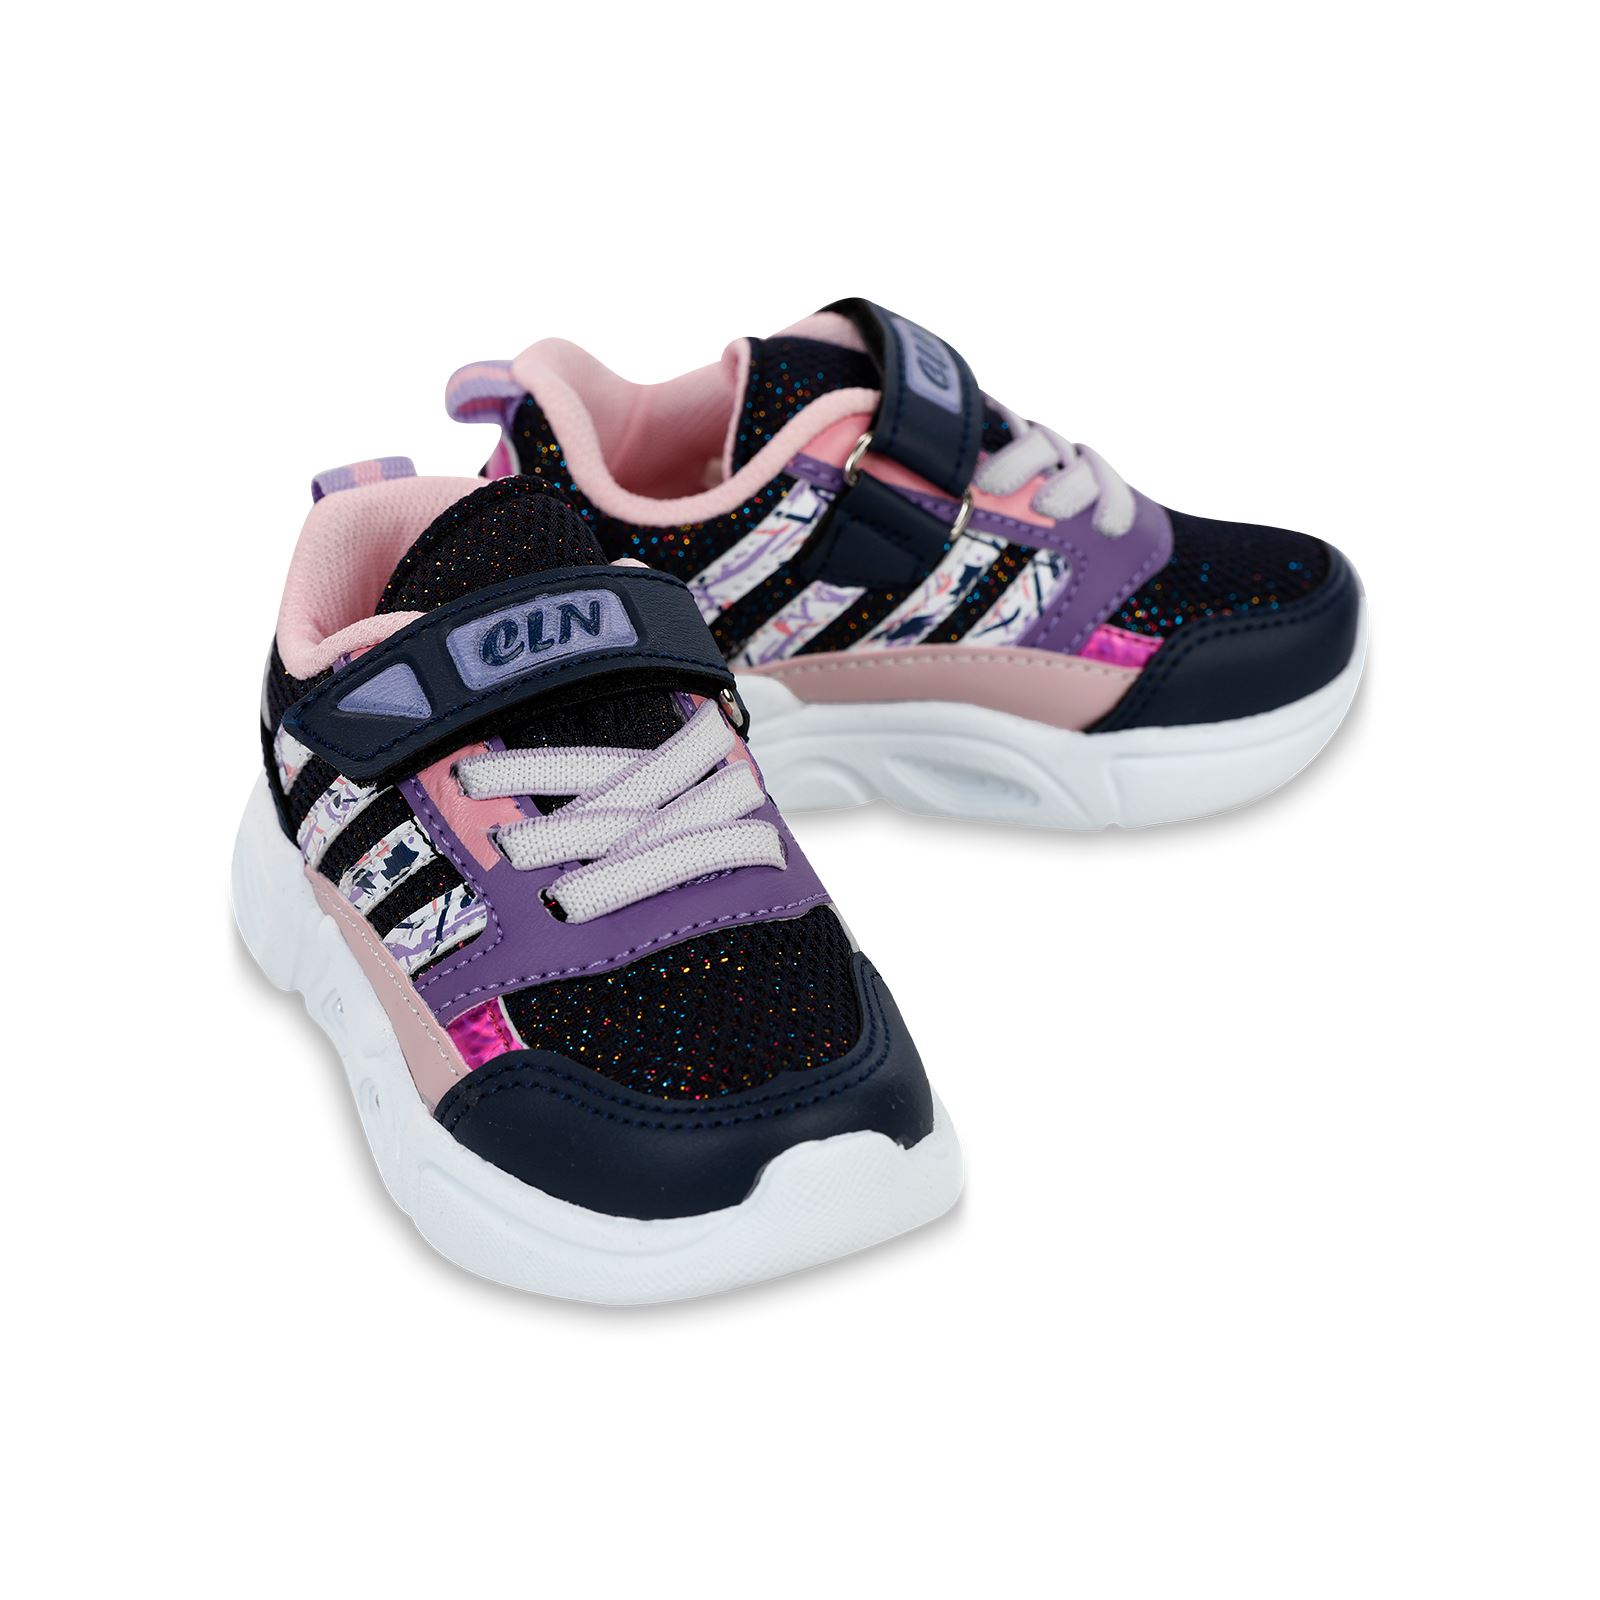 Callion Kız Çocuk Spor Ayakkabı 22-25 Numara Pembe-Mor